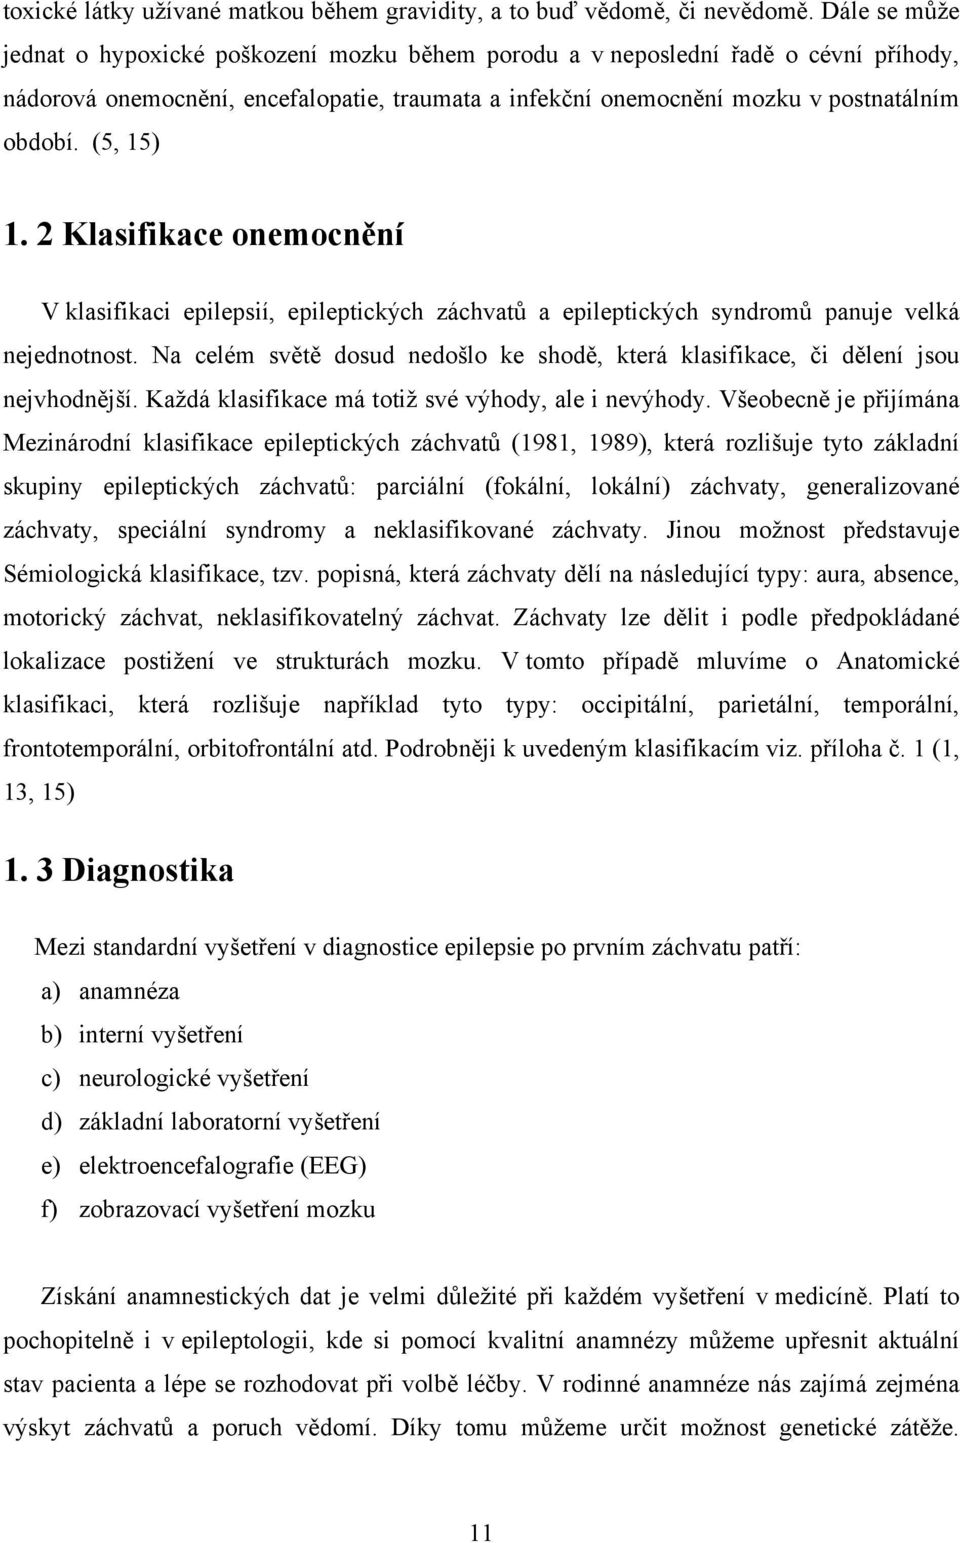 (5, 15) 1. 2 Klasifikace onemocnění V klasifikaci epilepsií, epileptických záchvatů a epileptických syndromů panuje velká nejednotnost.